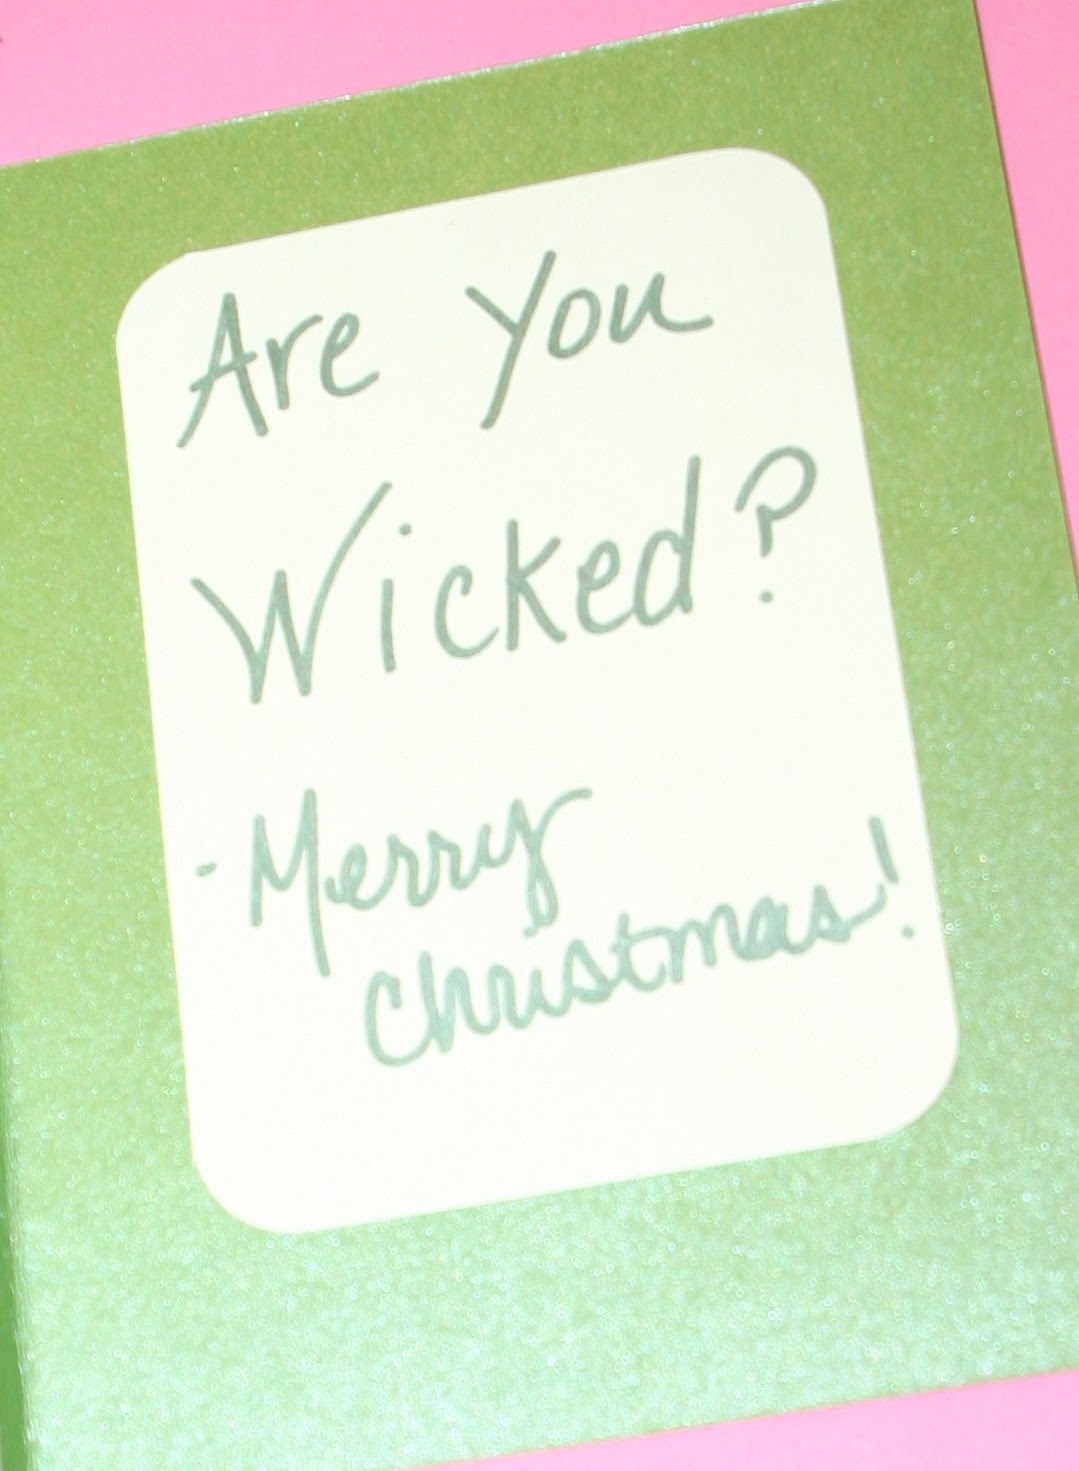 [Wicked+card+inside.JPG]